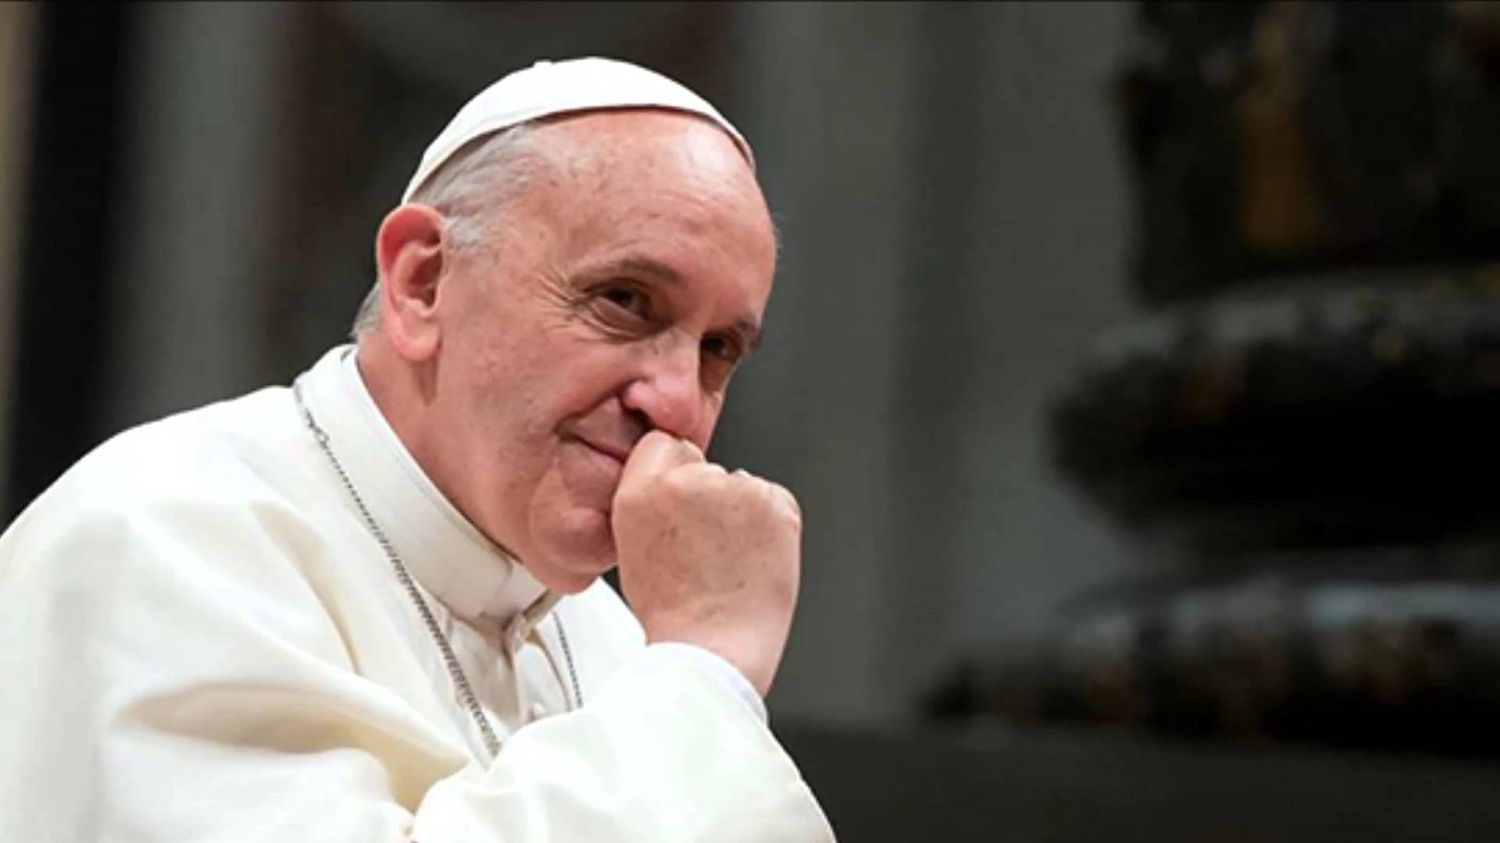 El Papa Francisco fue operado "sin complicaciones" de una hernia abdominal